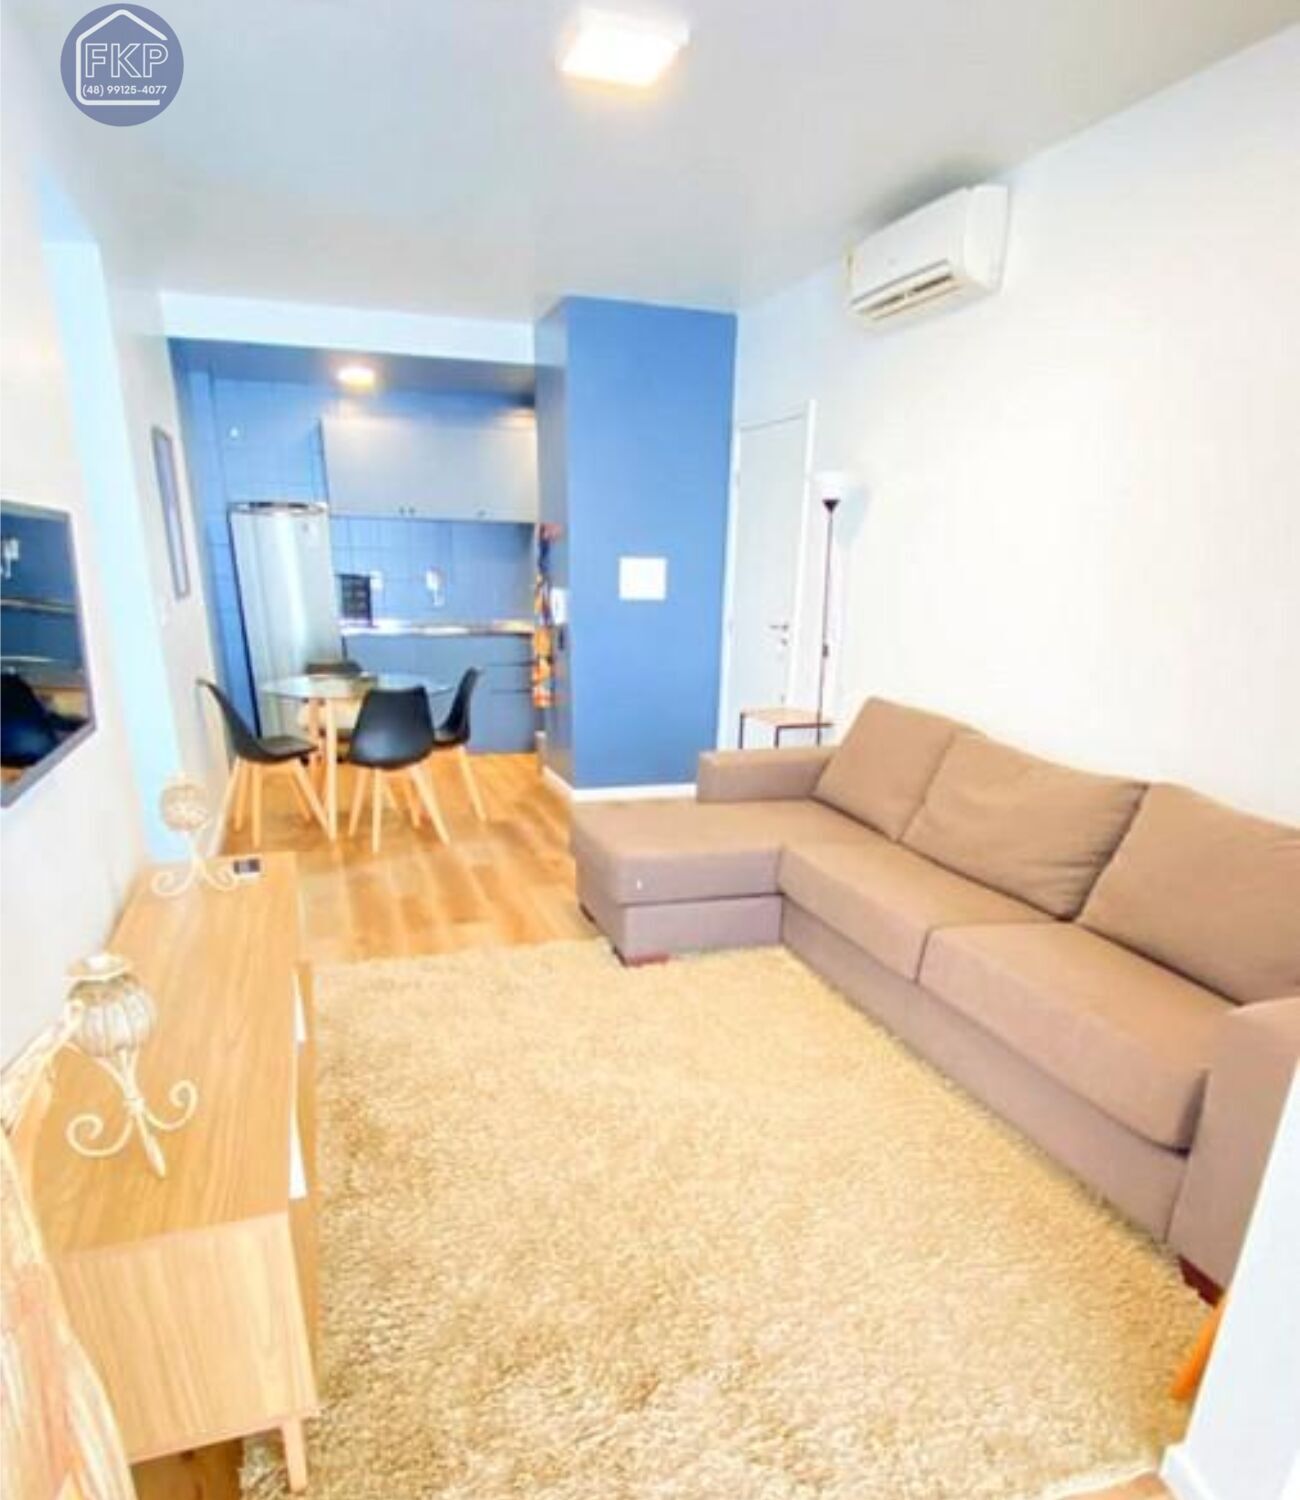 Apartamento, 2 quartos, 67 m² - Foto 1